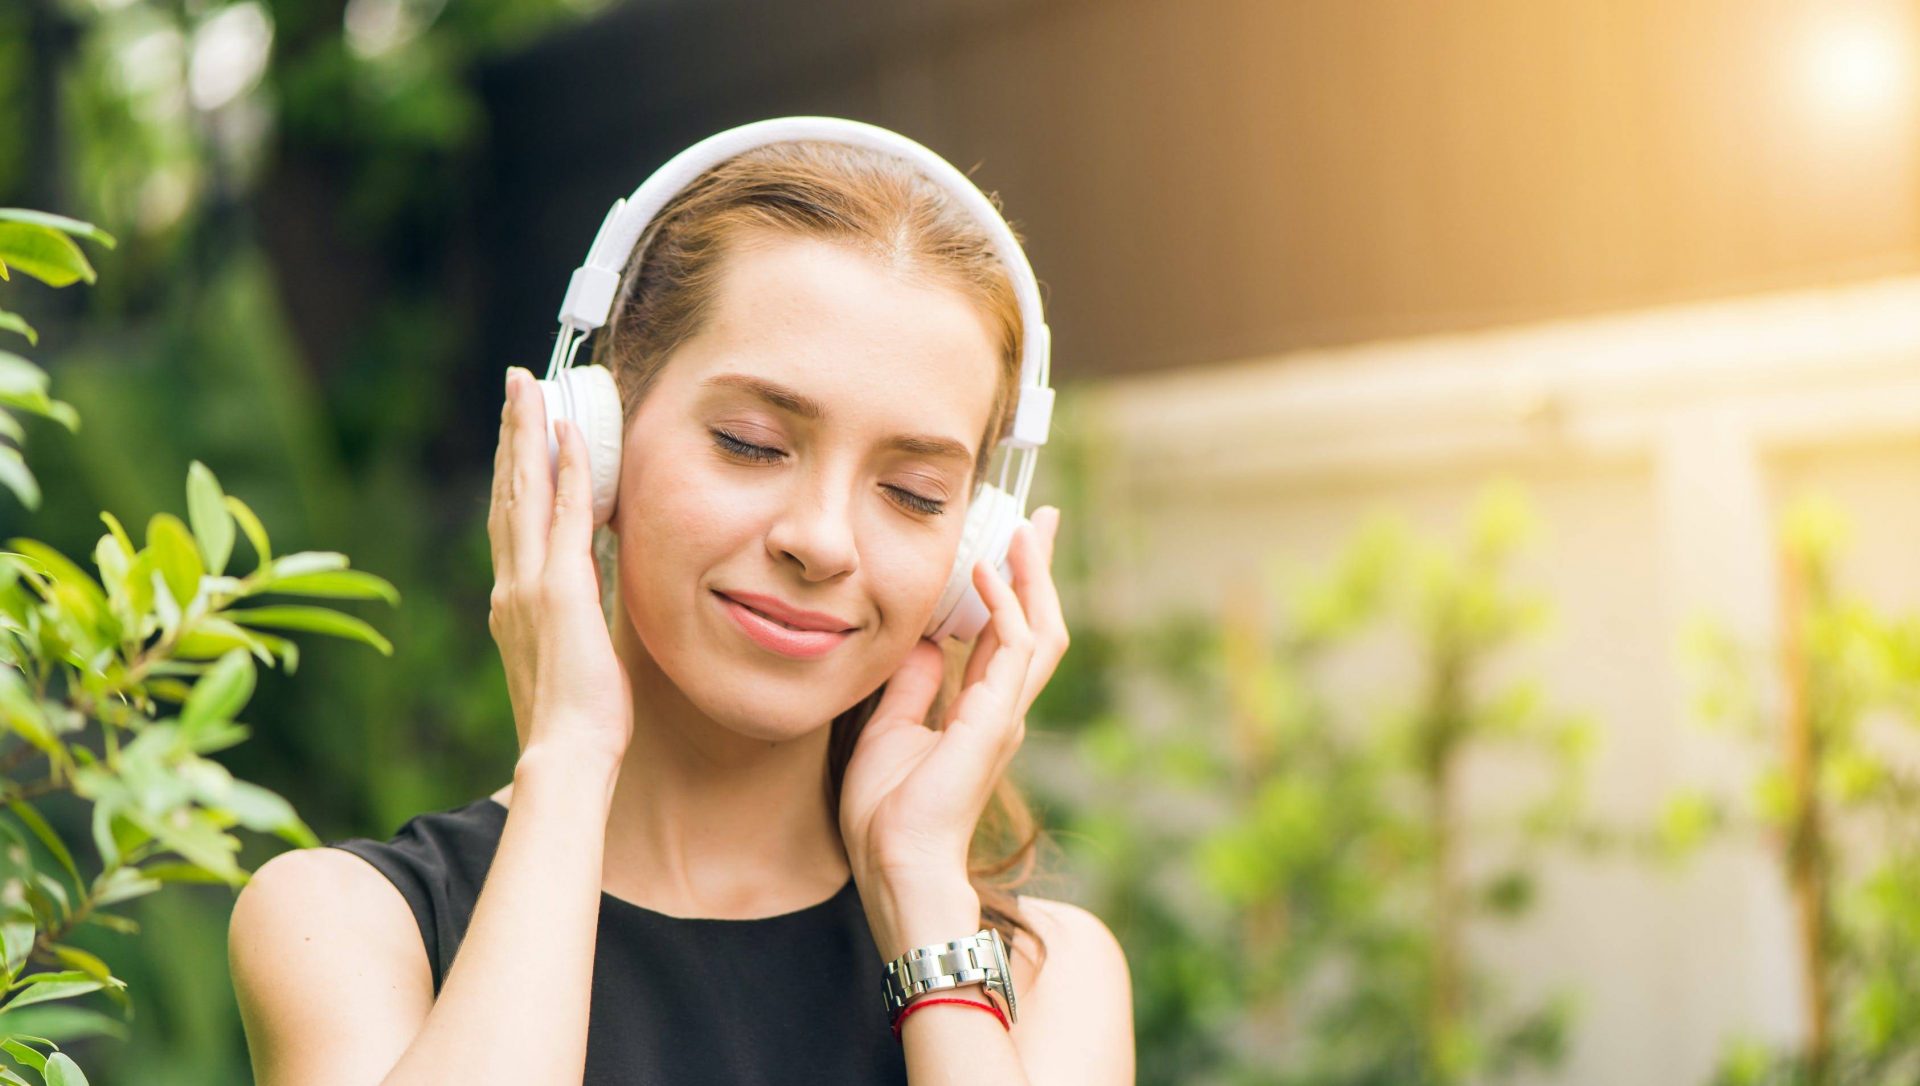 Evo kako sve muzika utiče na naše raspoloženje i ponašanje